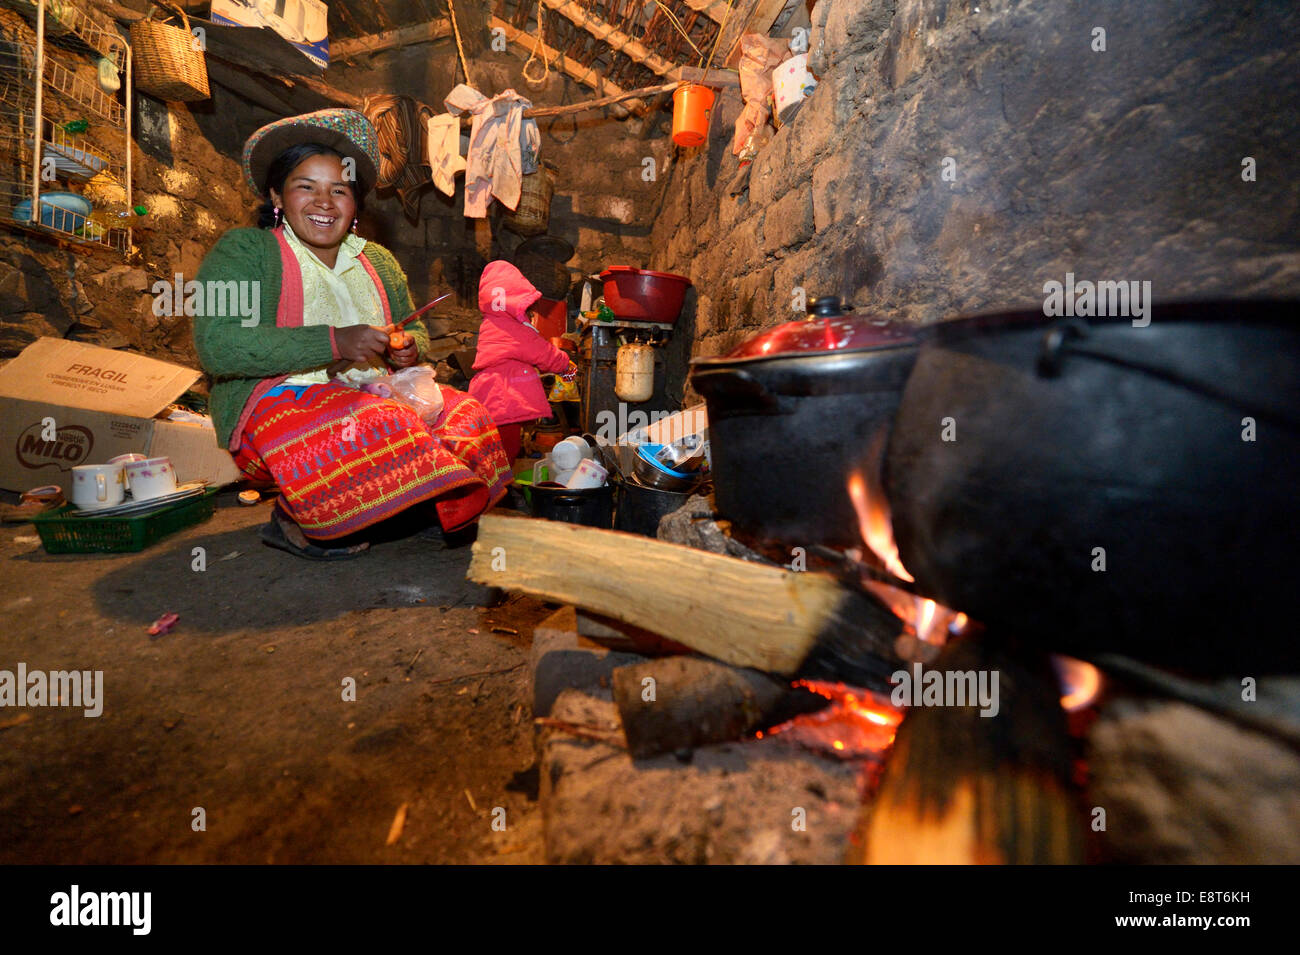 Jeune femme la cuisson sur un feu ouvert dans sa cuisine traditionnelle, Union européenne, Potrero Quispillacta, Ayacucho, au Pérou Banque D'Images